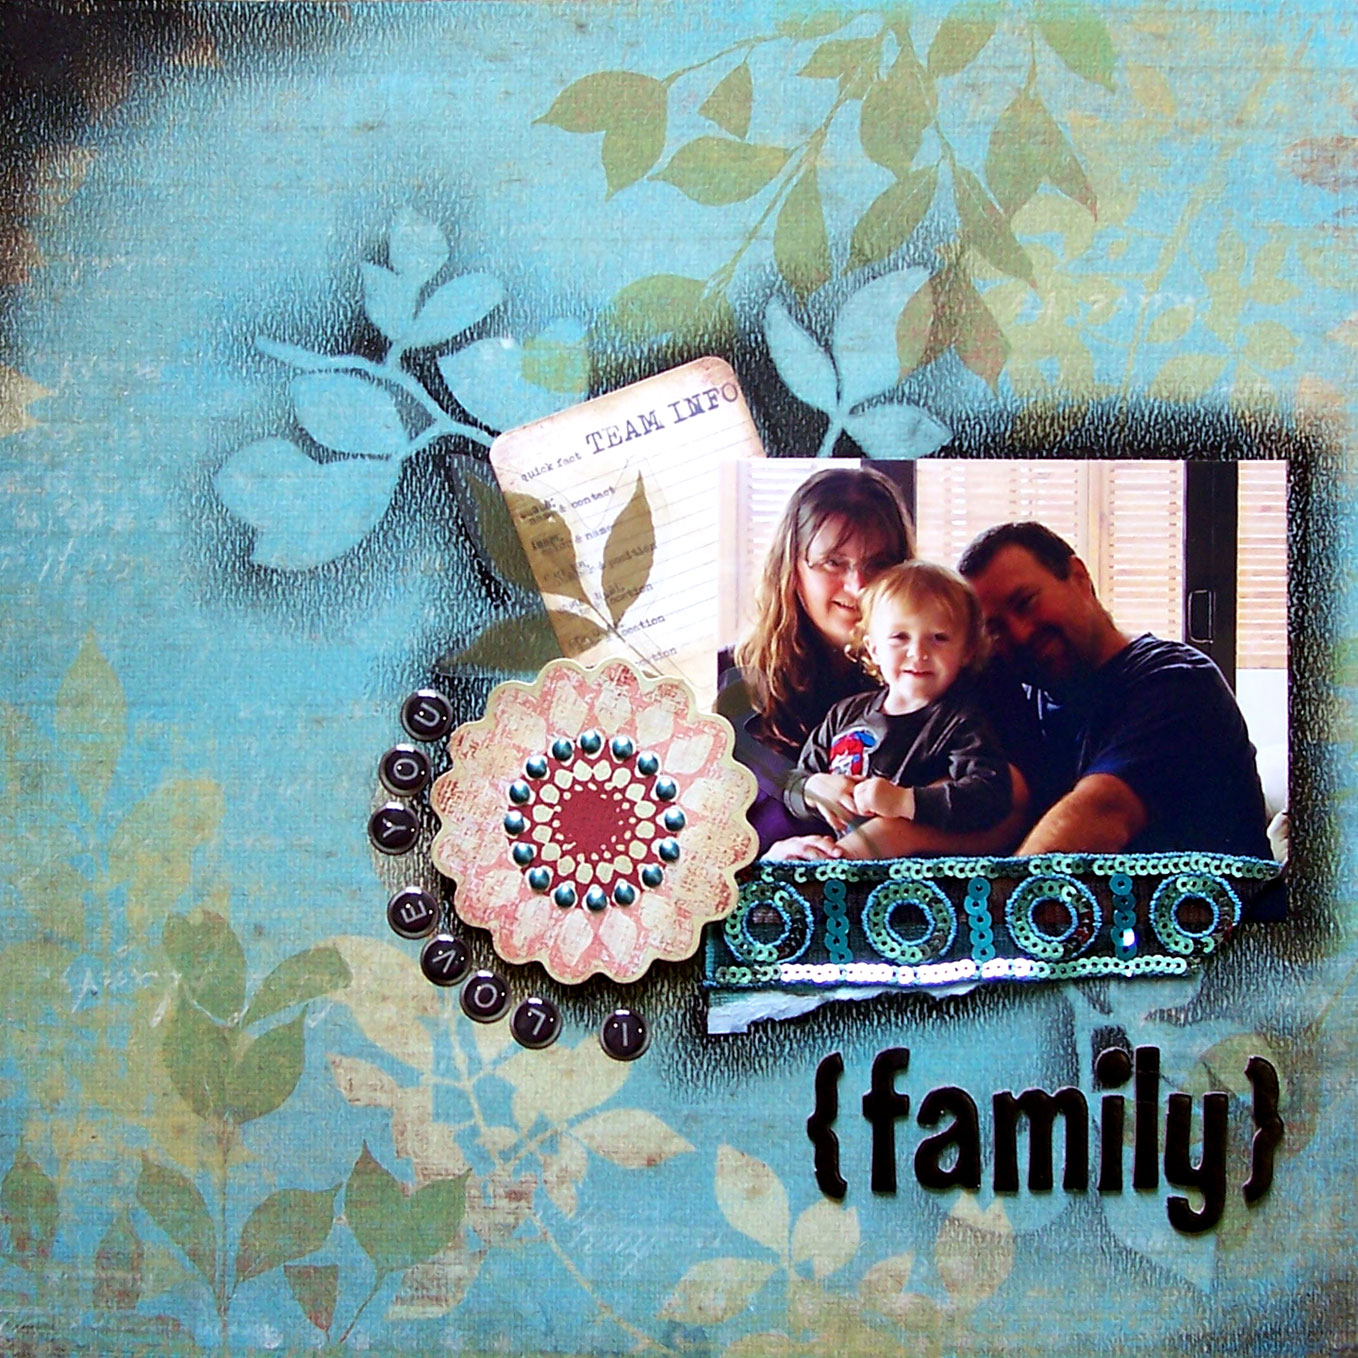 [family.jpg]